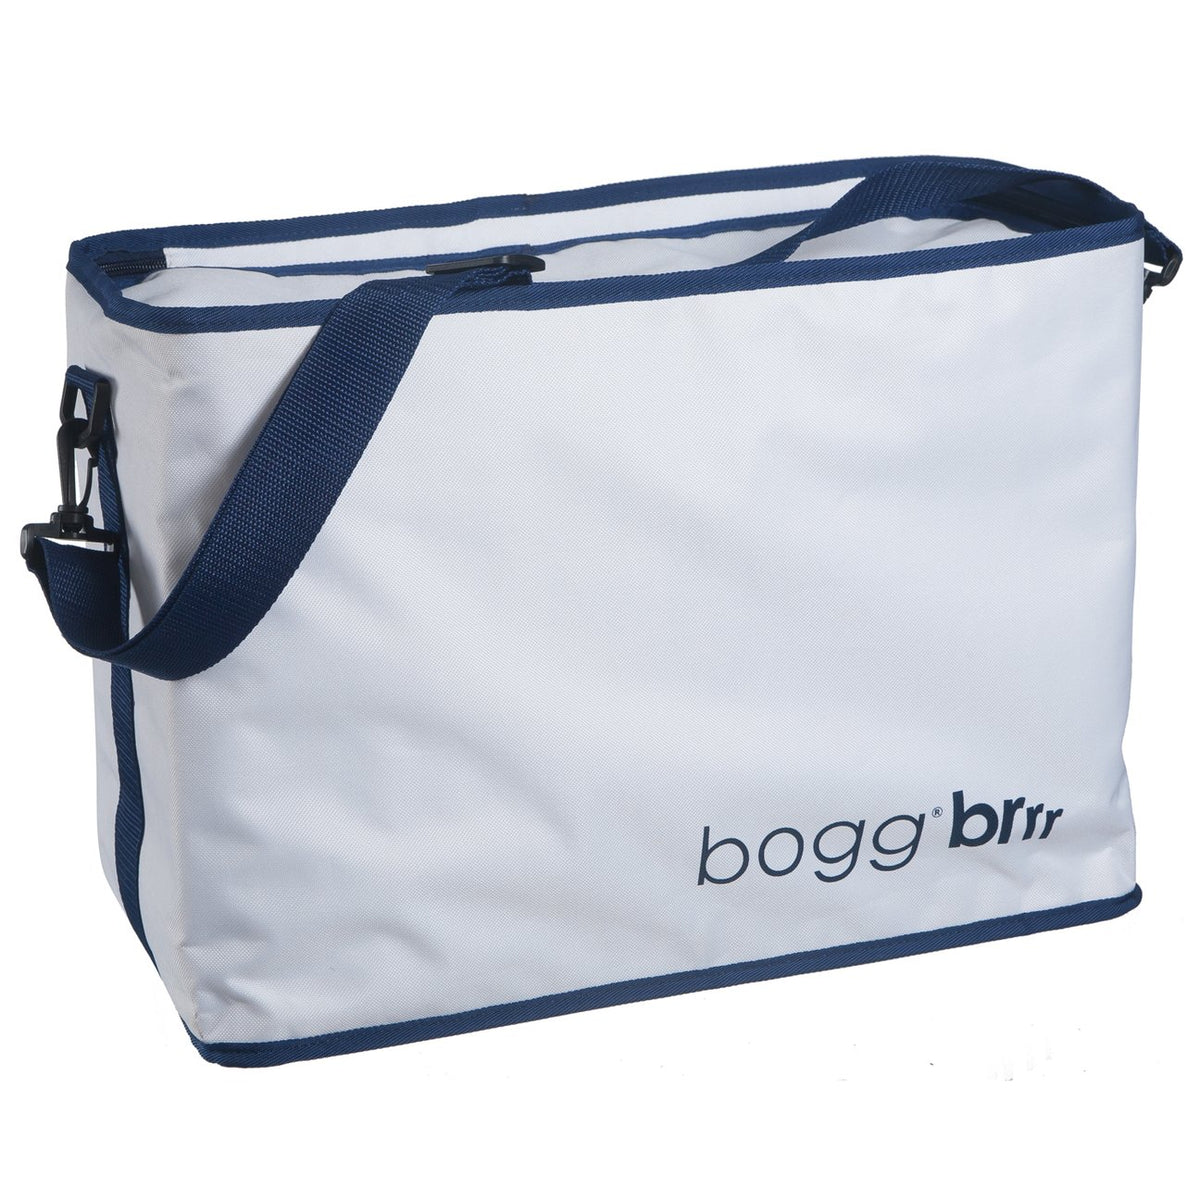 Bogg Bag Brr Cooler Insert